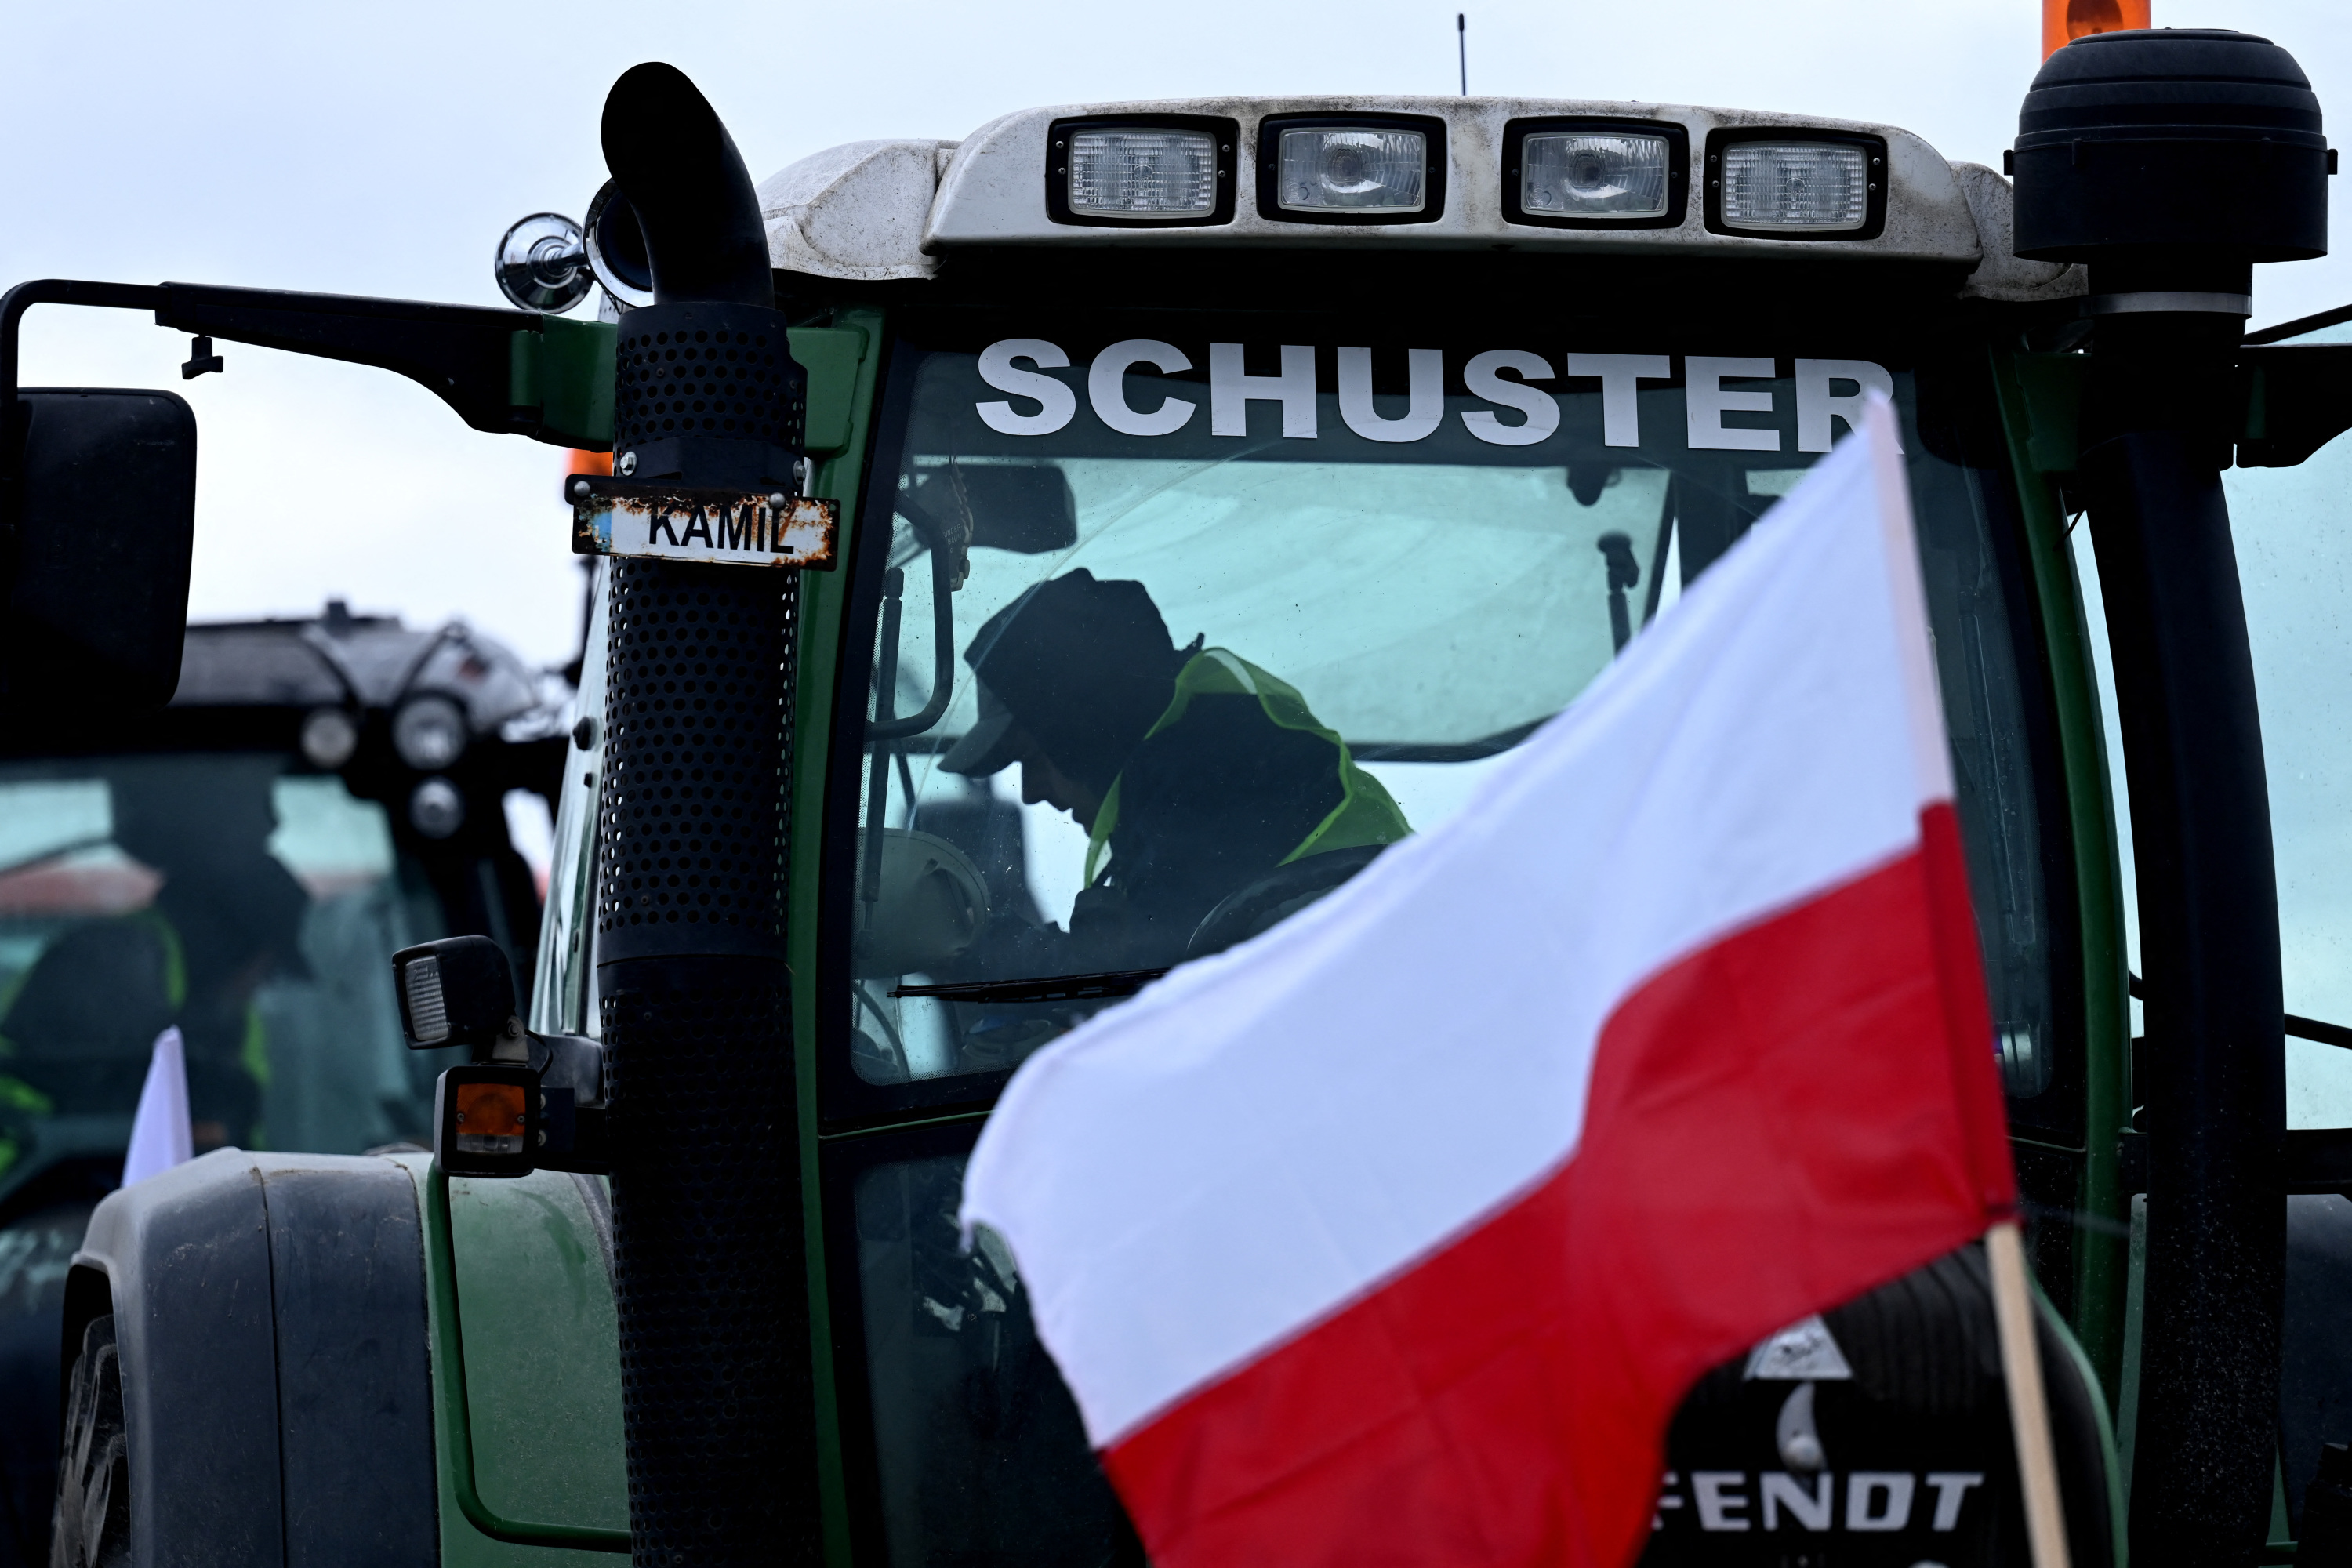 Les agriculteurs polonais déversent des céréales ukrainiennes, Kiev en colère